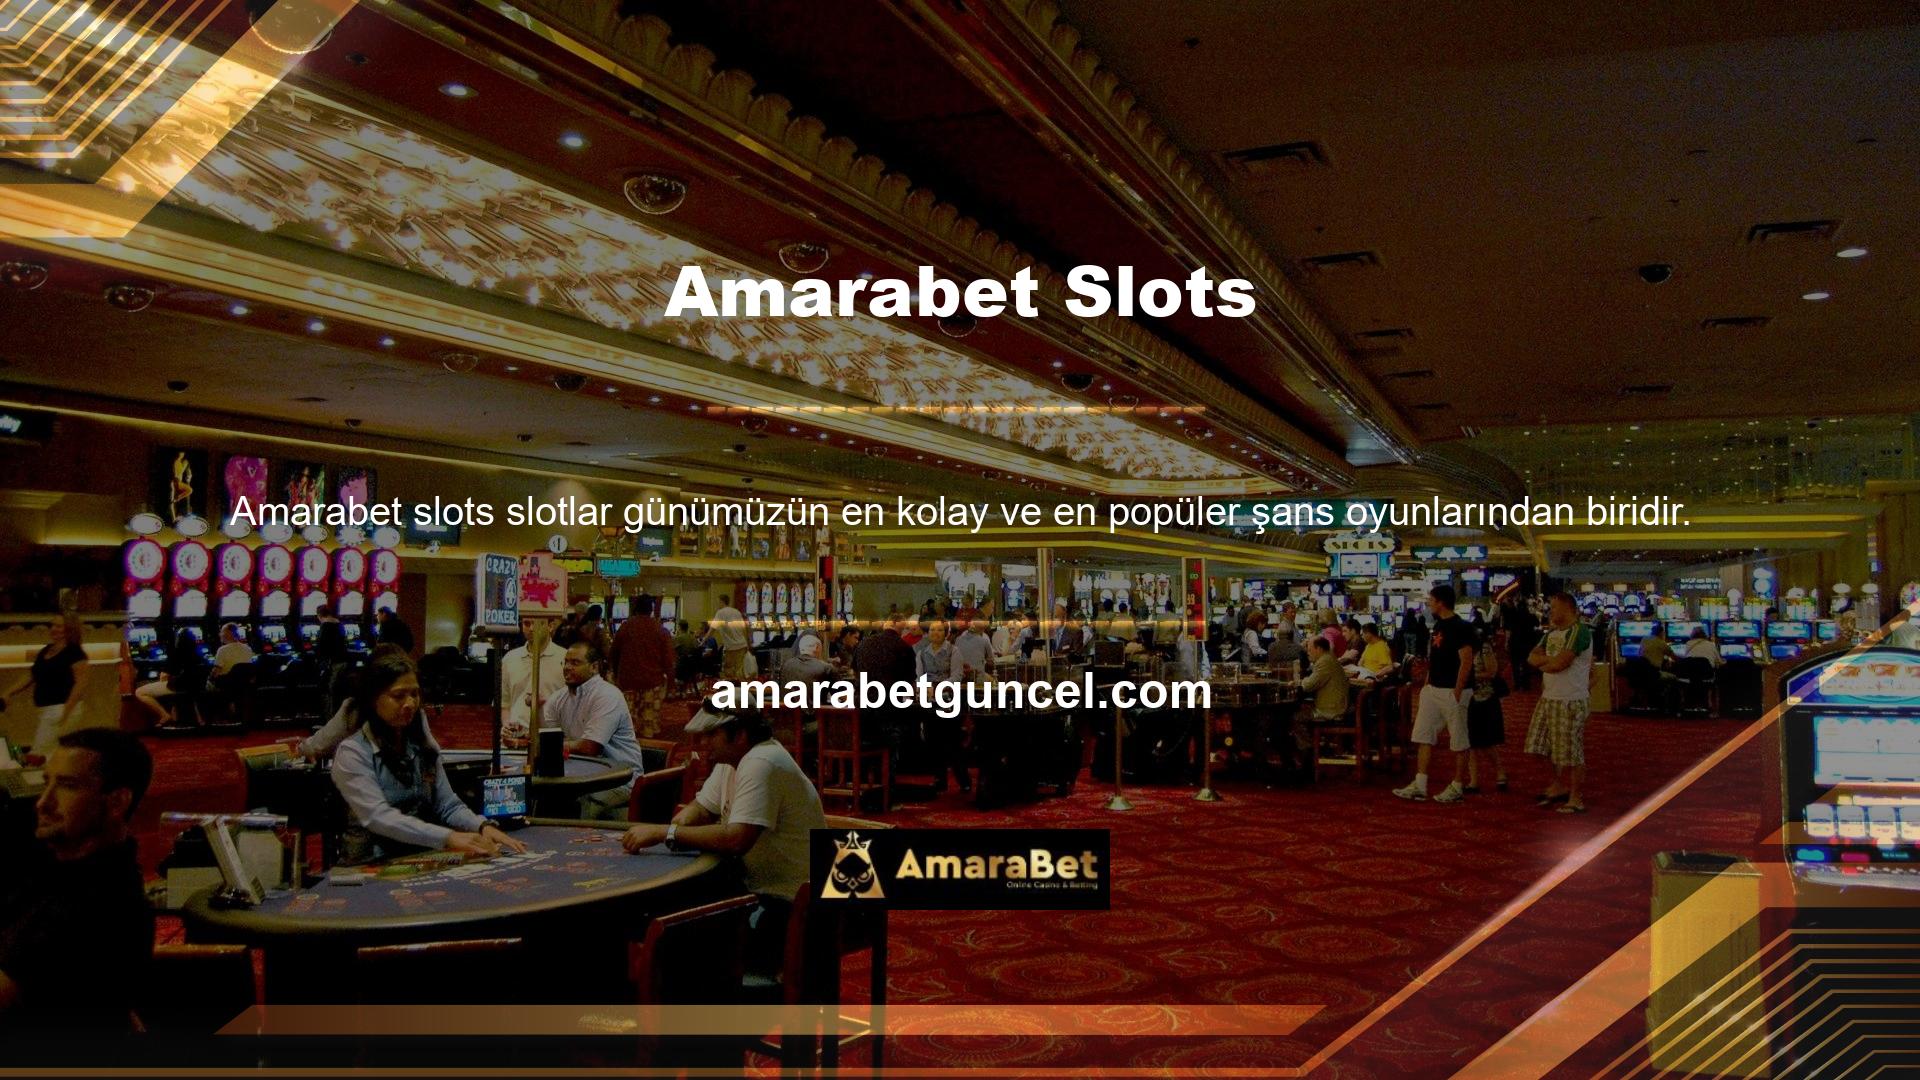 Amarabet slot siteleri Türkiye'de genellikle premium hizmetler ve tercih edilen birçok slot oyunu sunmaktadır